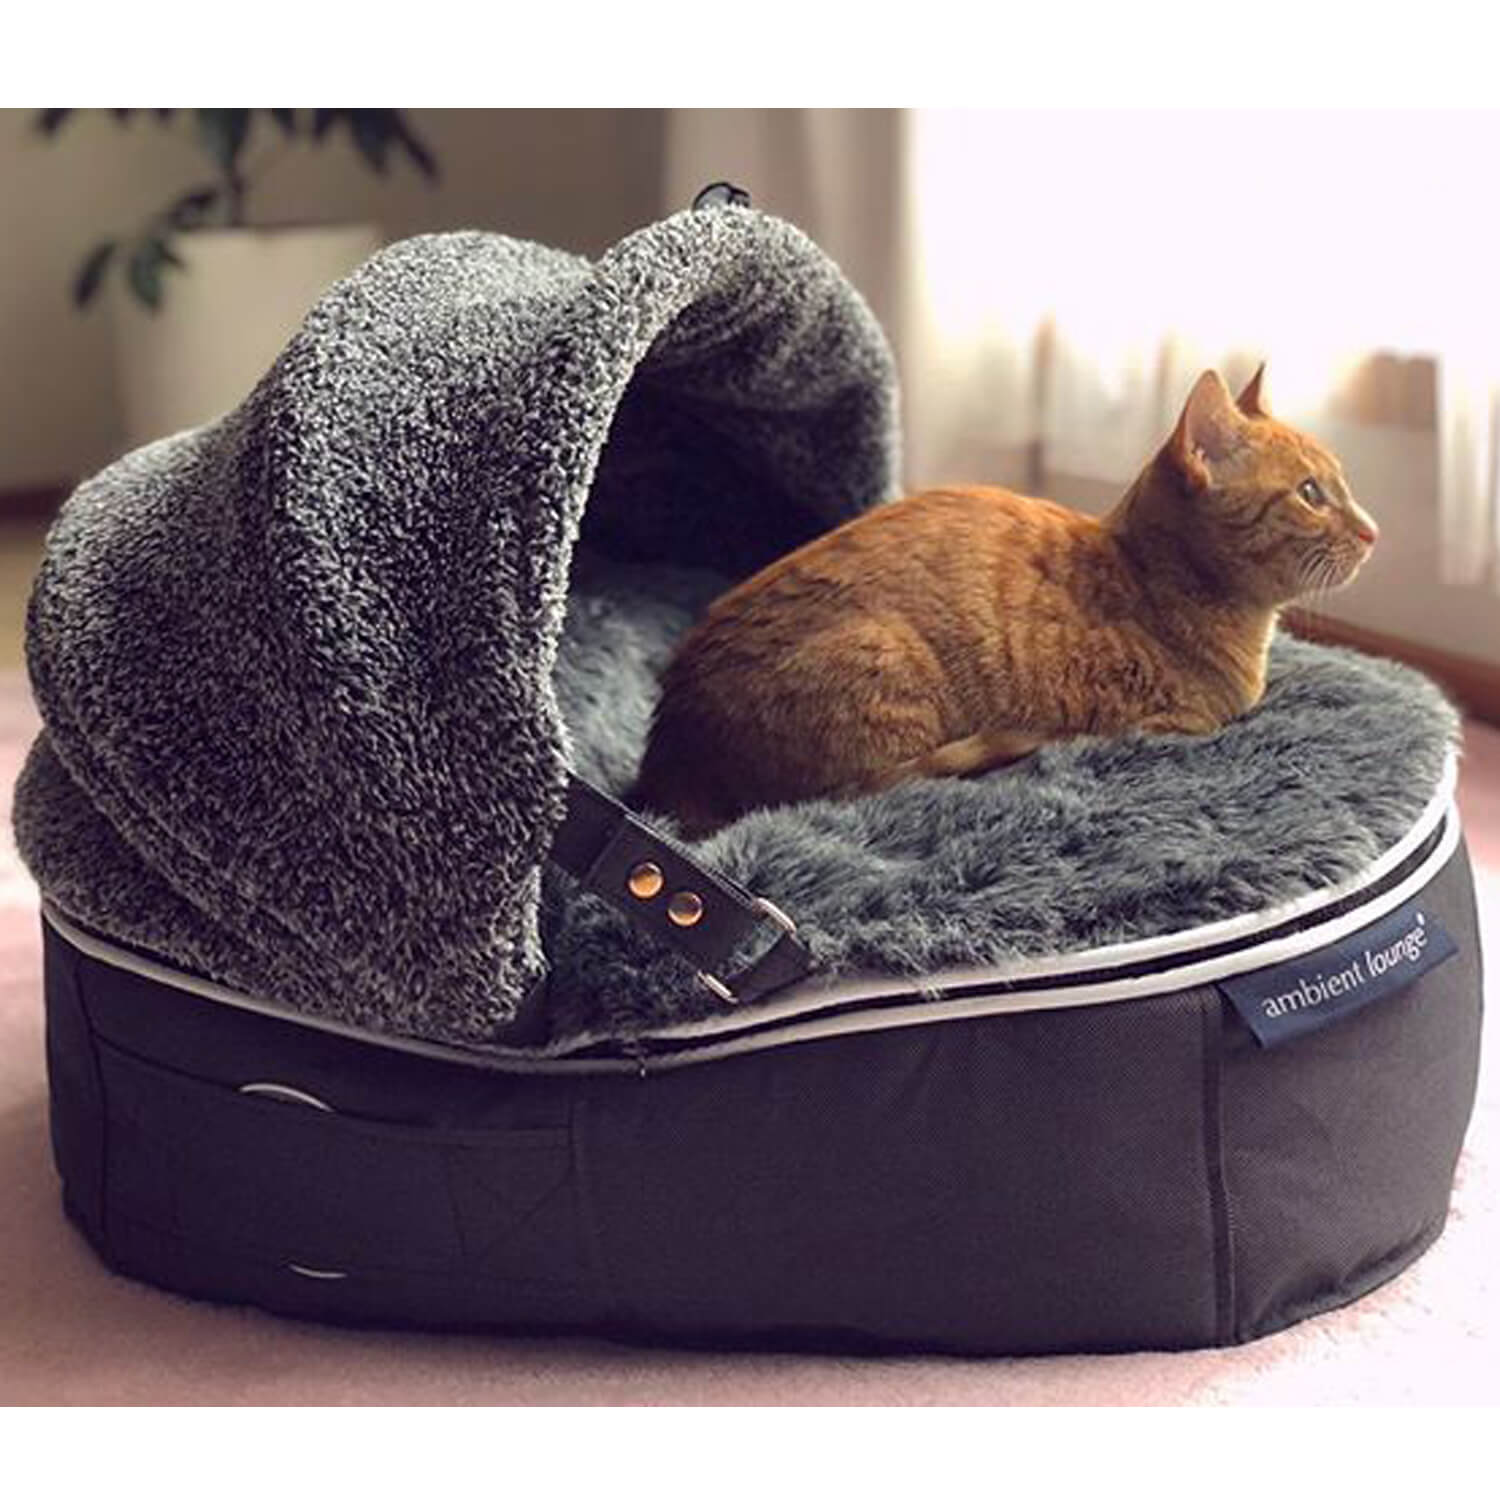 ที่นอน แมว ทํา เอง pantip